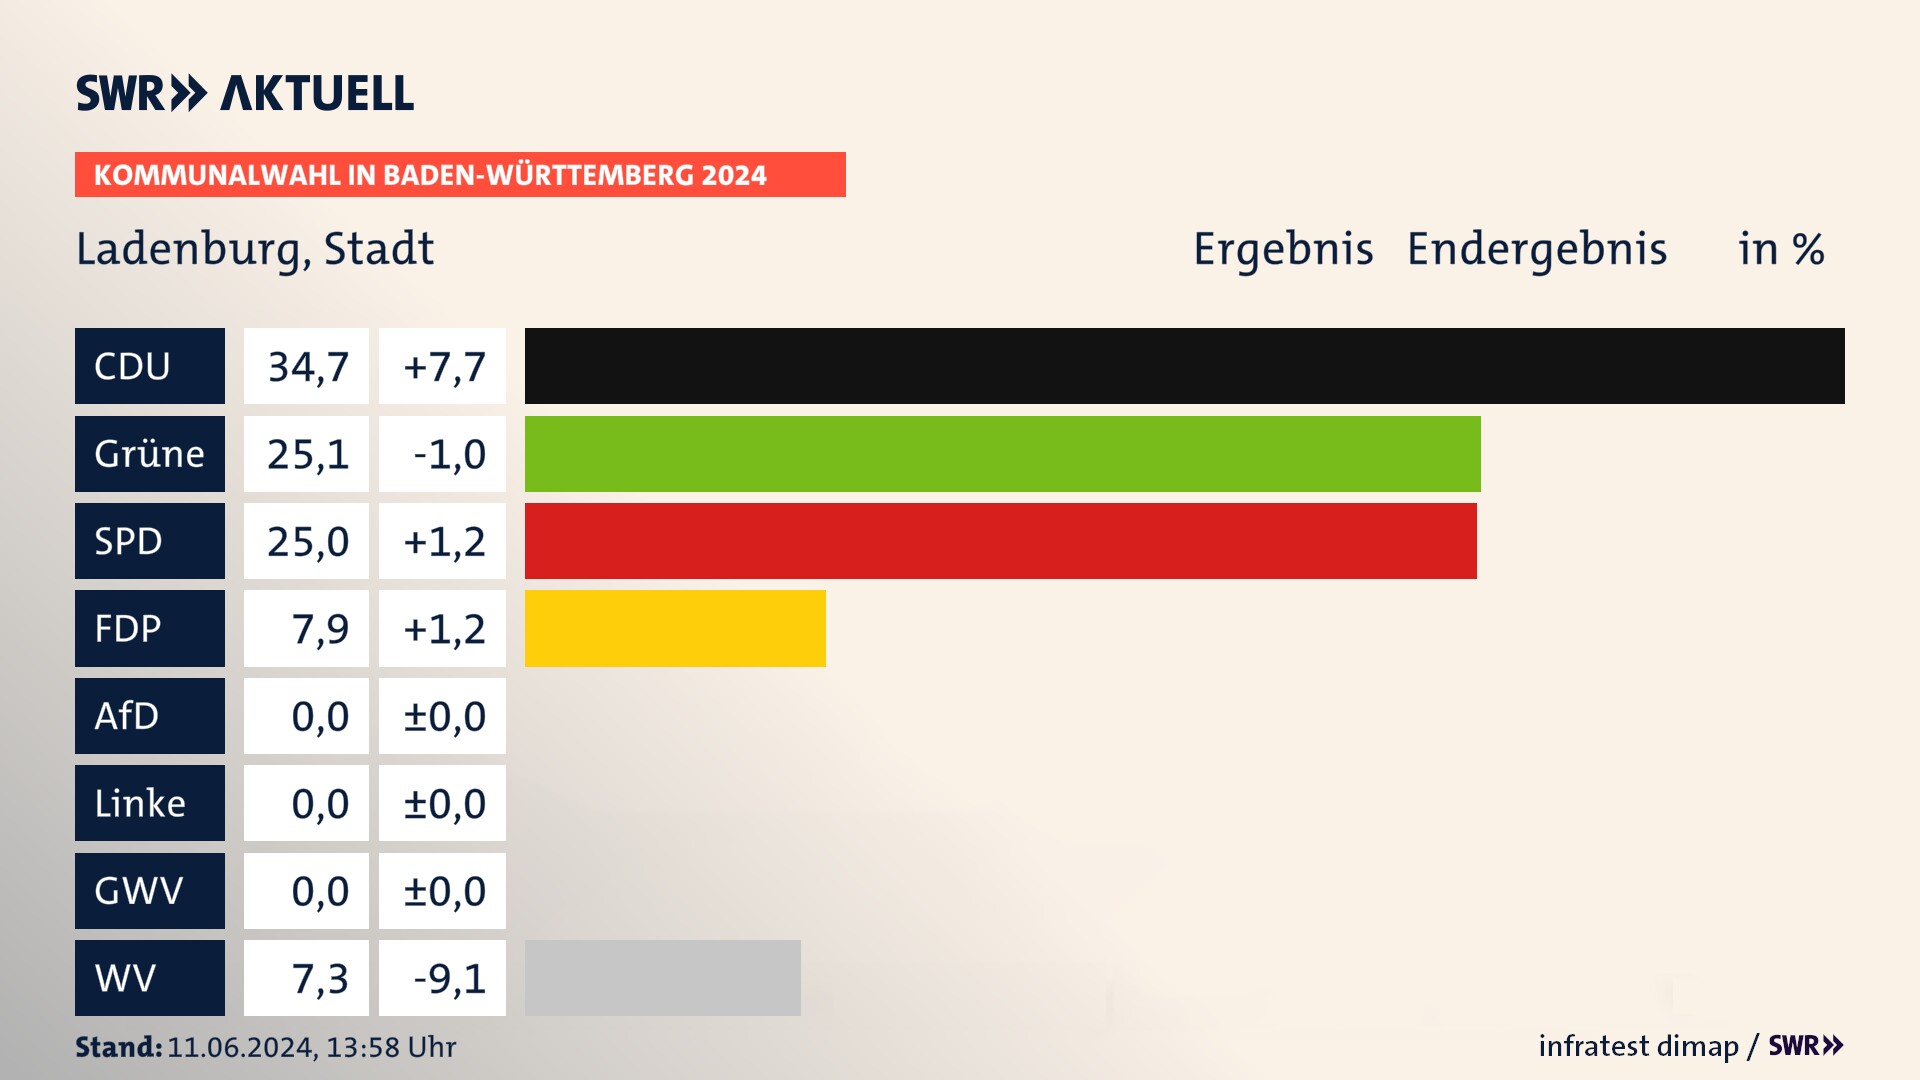 Kommunalwahl 2024 Endergebnis Zweitstimme für Ladenburg. In Ladenburg, Stadt erzielt die CDU 34,7 Prozent der gültigen  Stimmen. Die Grünen landen bei 25,1 Prozent. Die SPD erreicht 25,0 Prozent. Die FDP kommt auf 7,9 Prozent. Die Wählervereinigungen landen bei 7,3 Prozent.